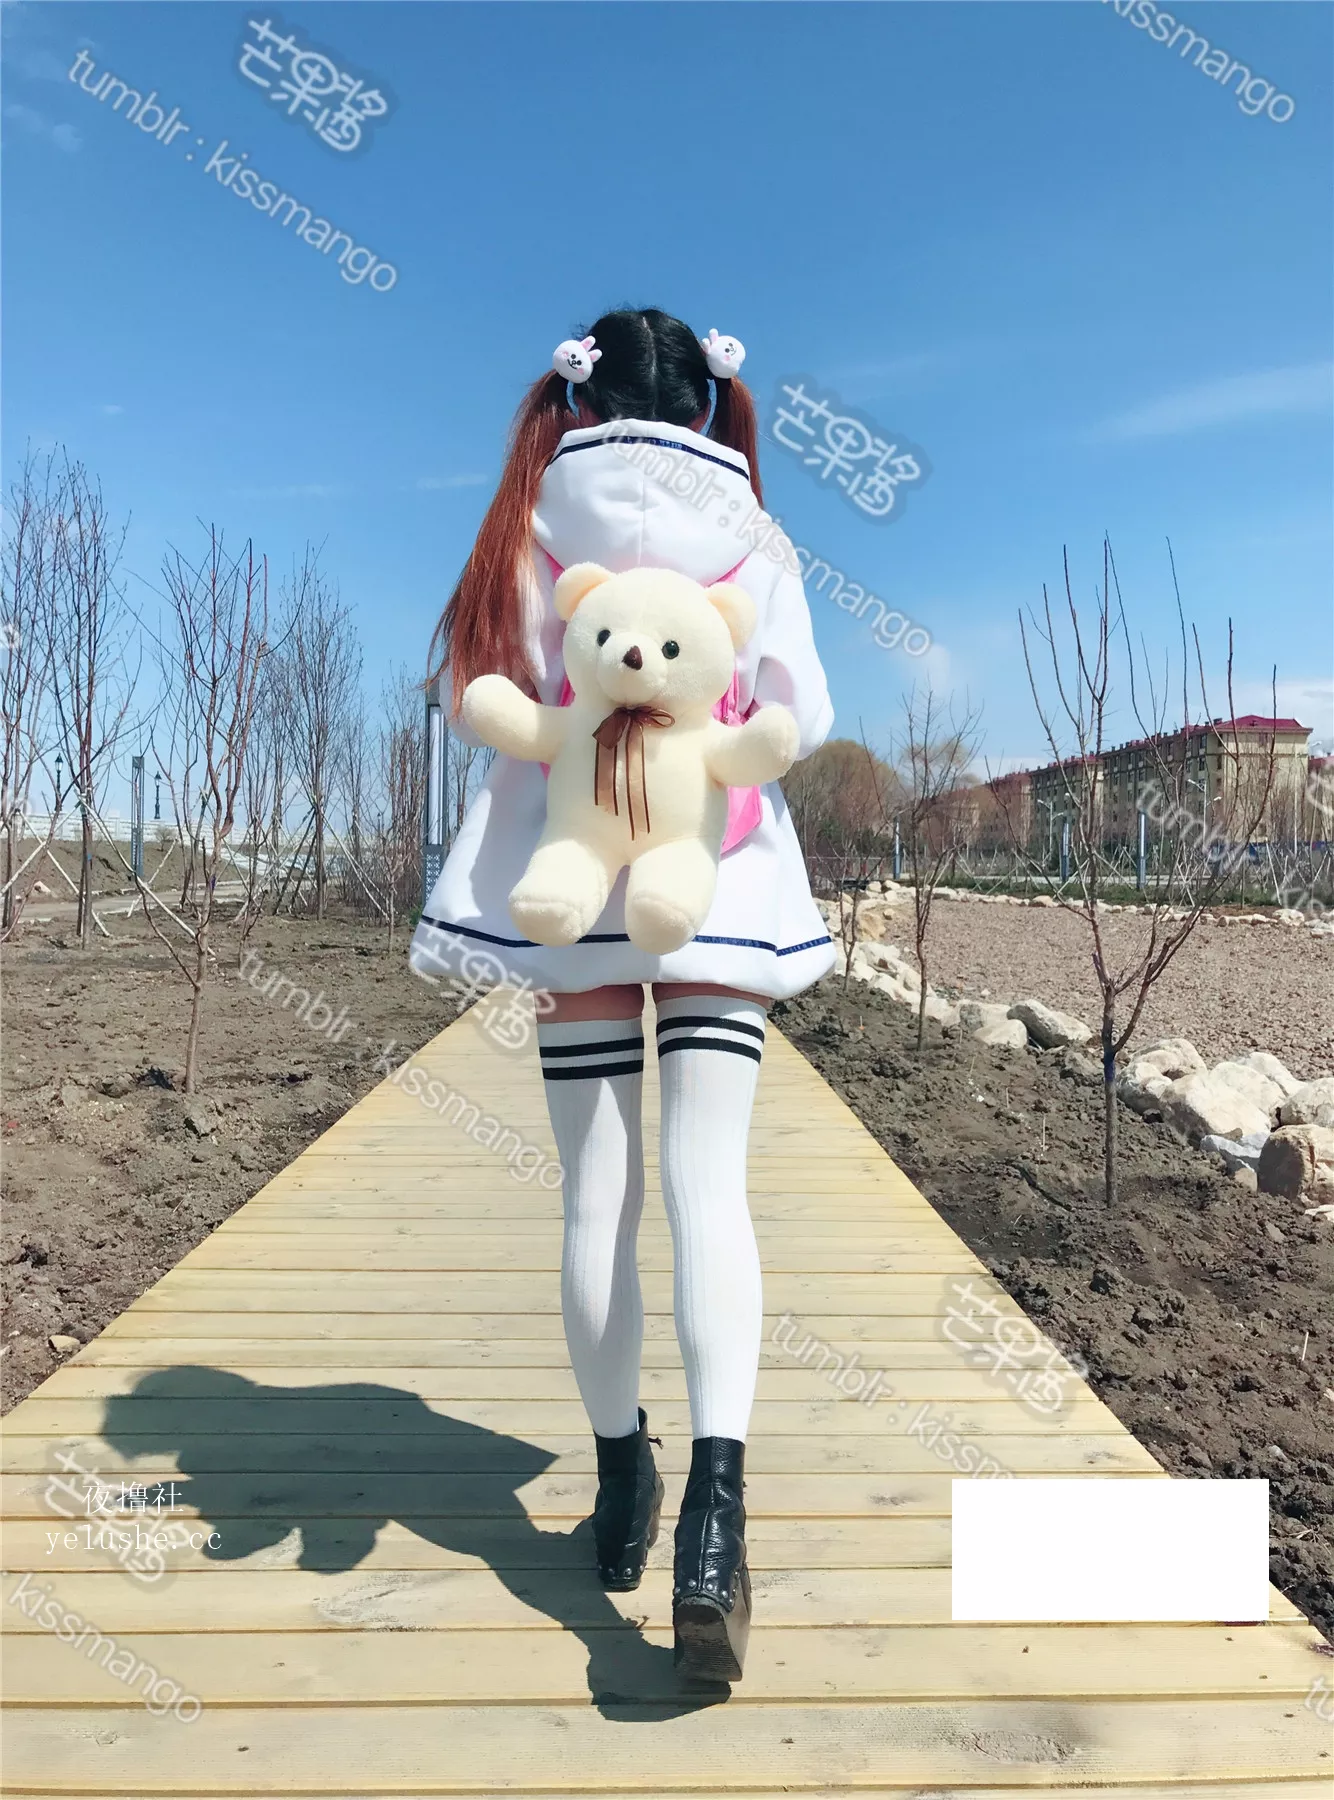 @芒果酱–可爱萝莉装冬季公园活动露出(56pp)